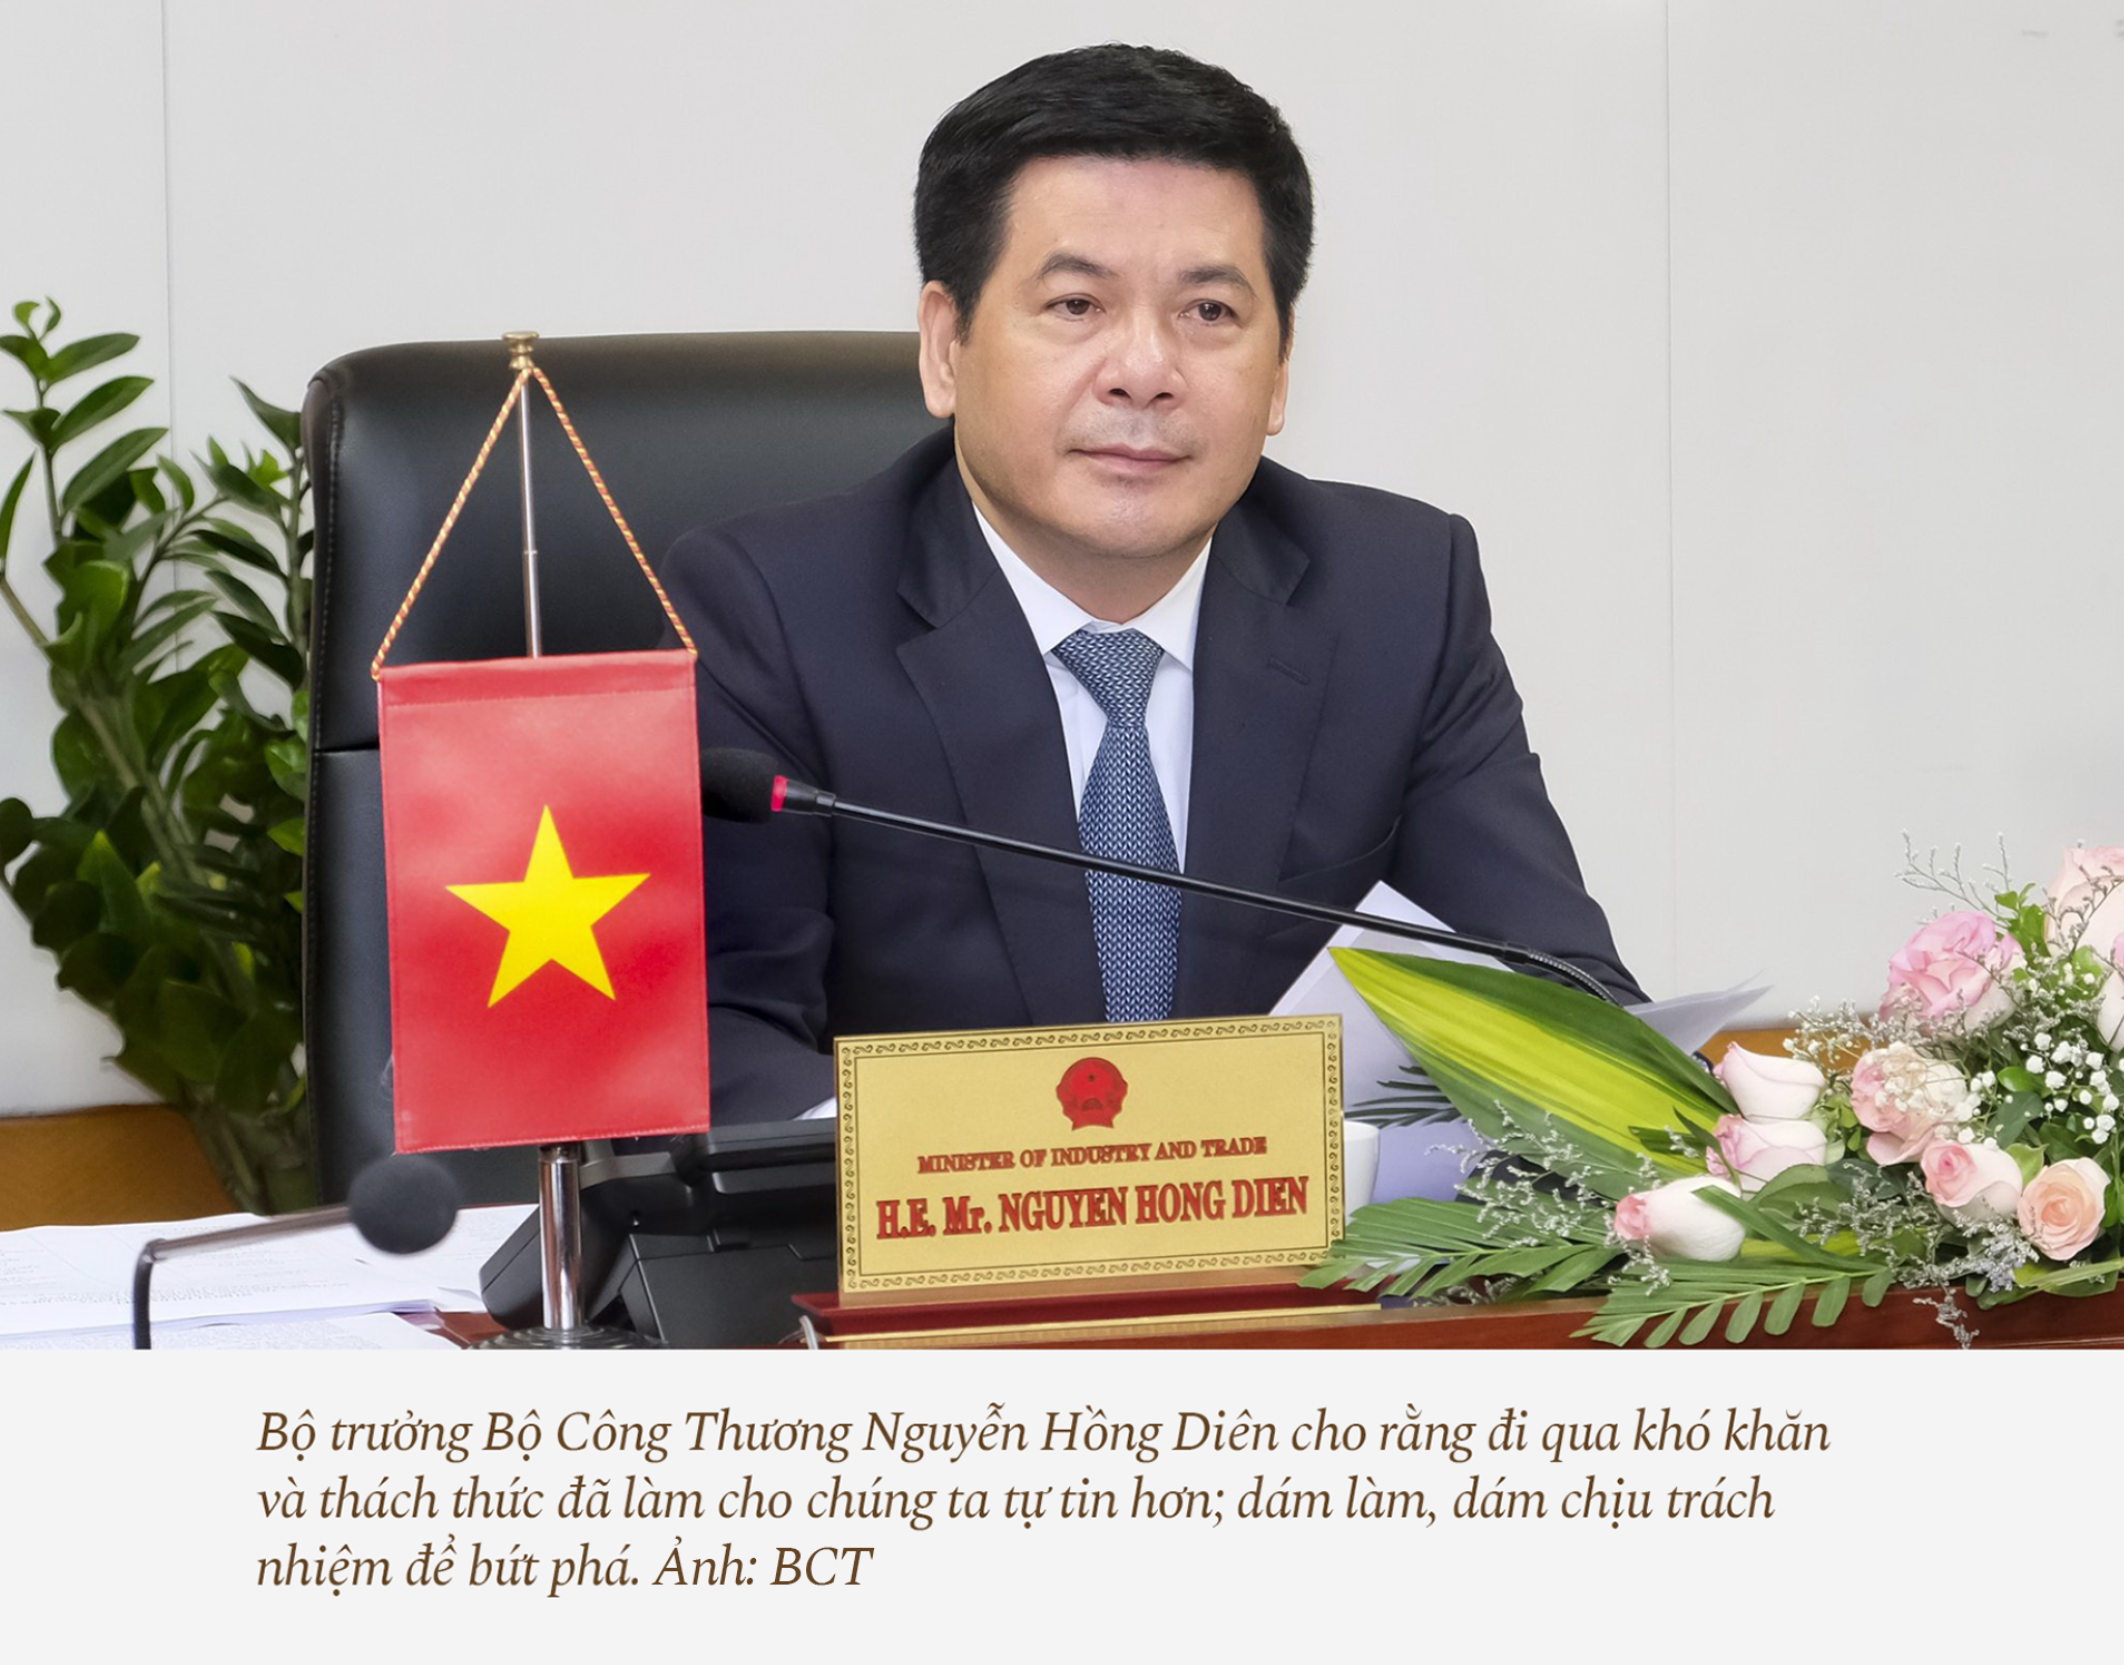 Bộ trưởng Bộ Công Thương Nguyễn Hồng Diên: Khó khăn đi qua, chúng ta tự tin hơn - ảnh 9